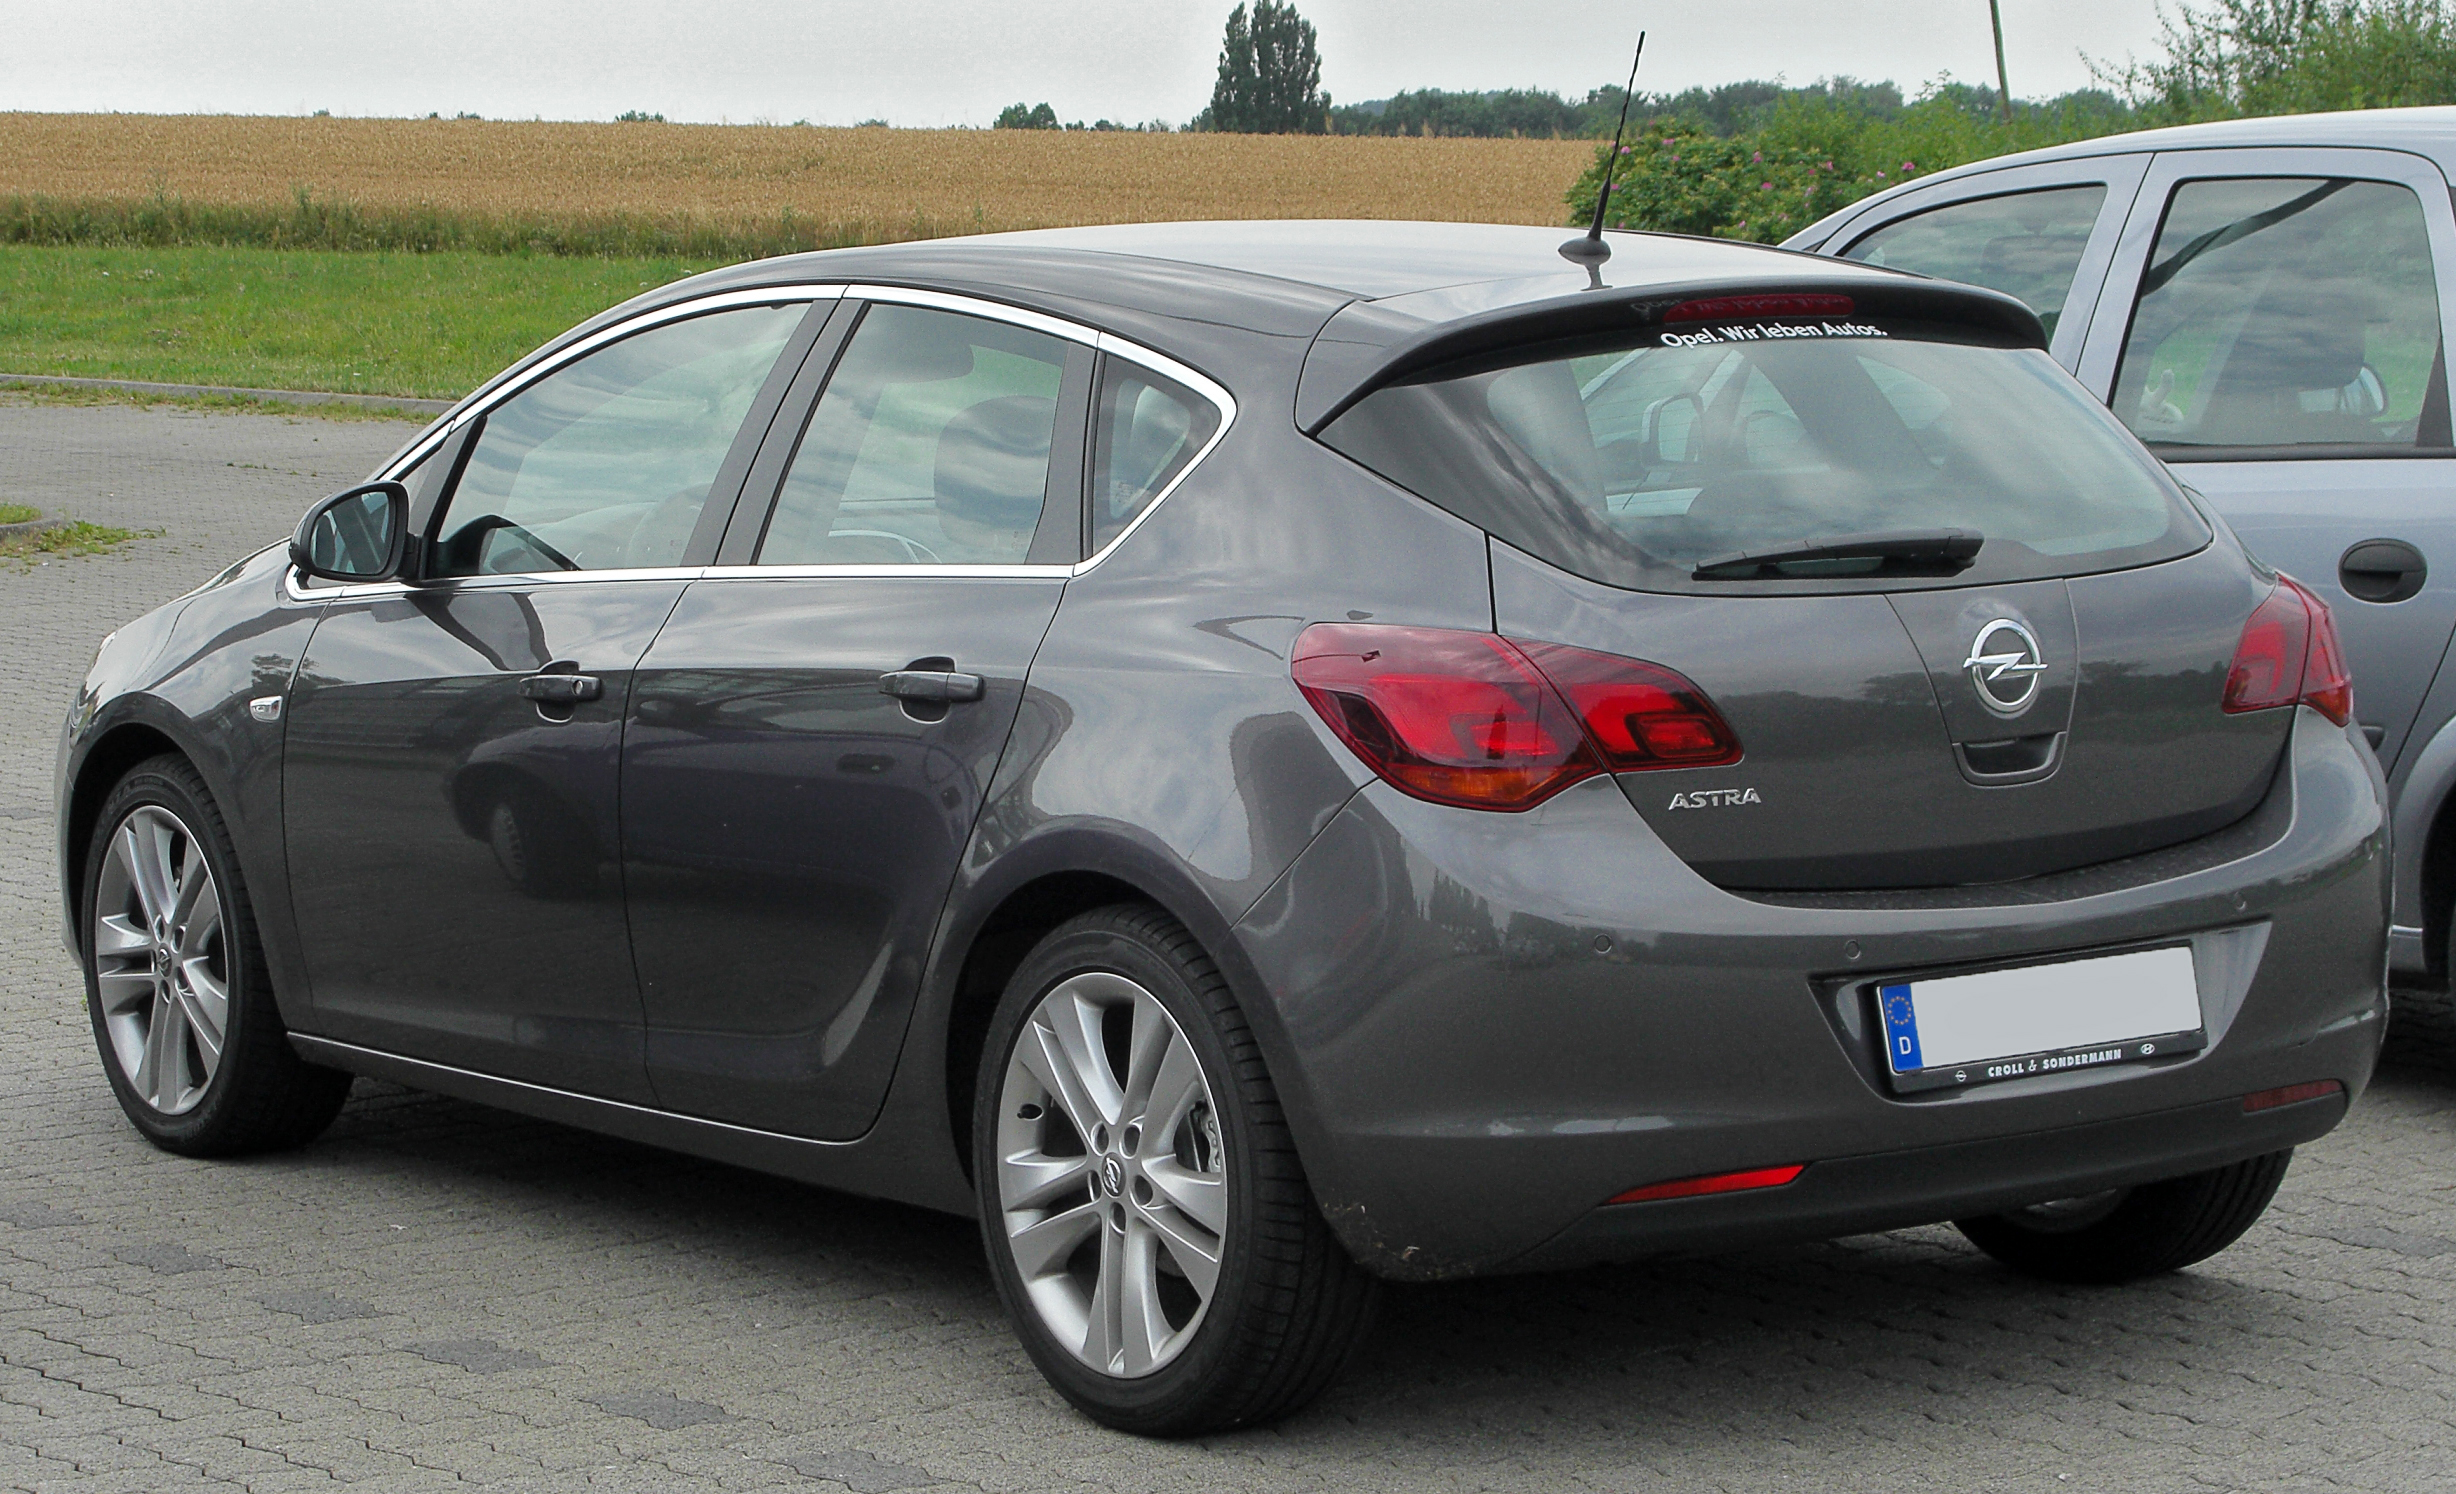 Fichier:Opel Astra J rear-1 20100725.jpg — Wikipédia